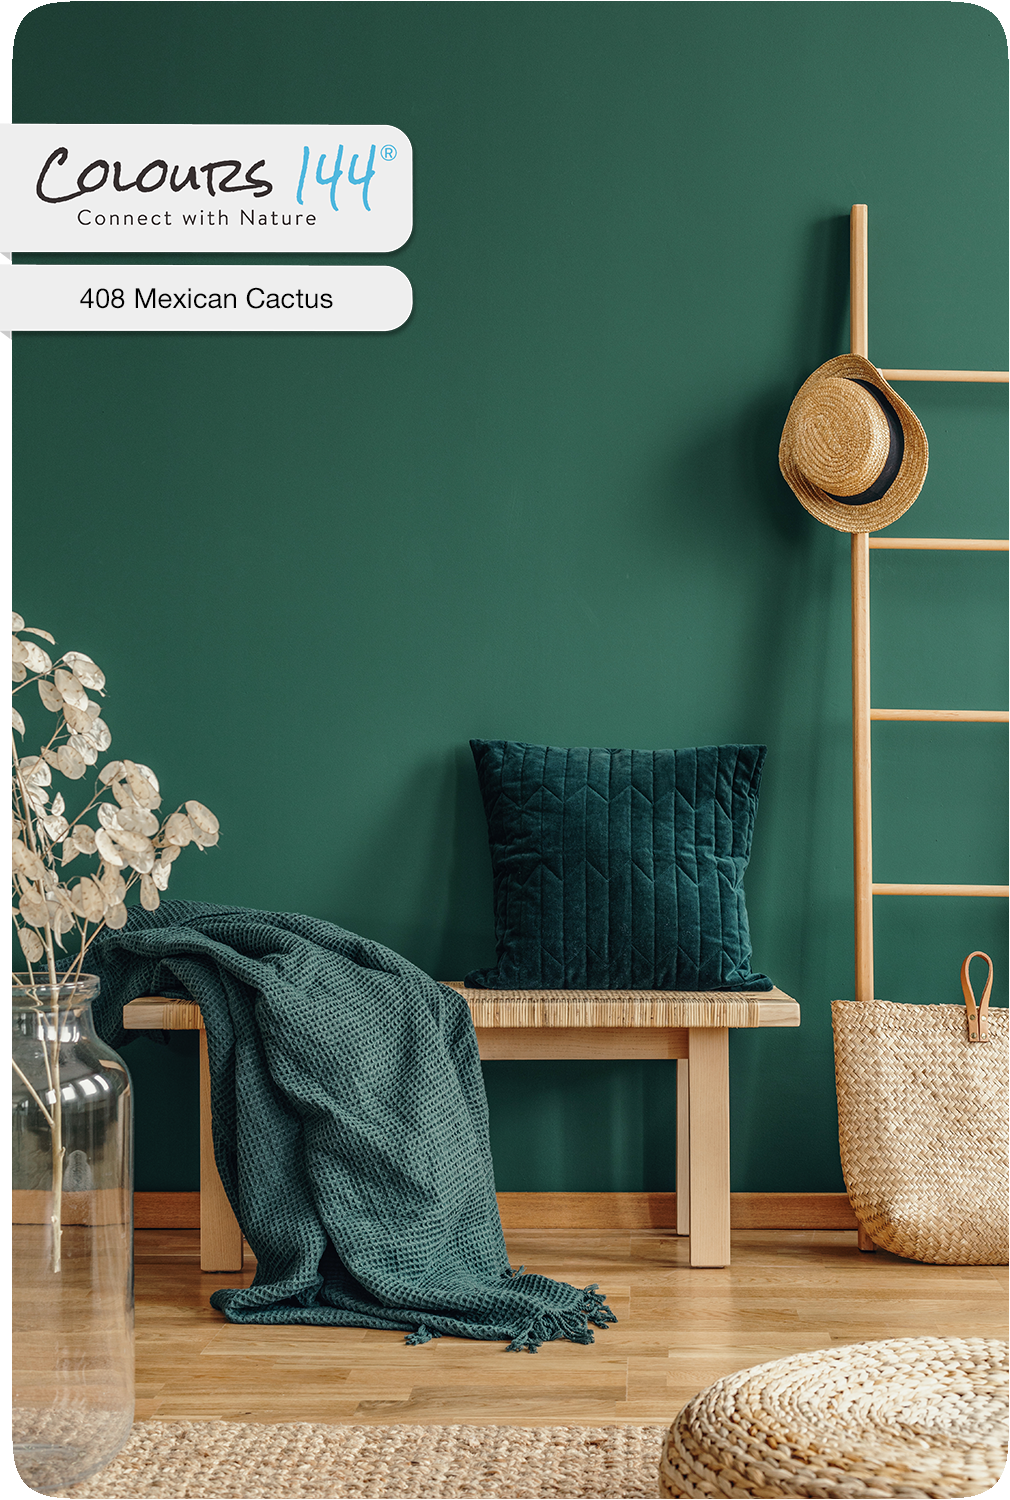 colours144-mexican-cactus-408-raumgestaltung-farbgestaltung-farbkonzepte-wohnzimmer-schlafzimmer-kinderzimmer-esszimmer-treppenhaus-3